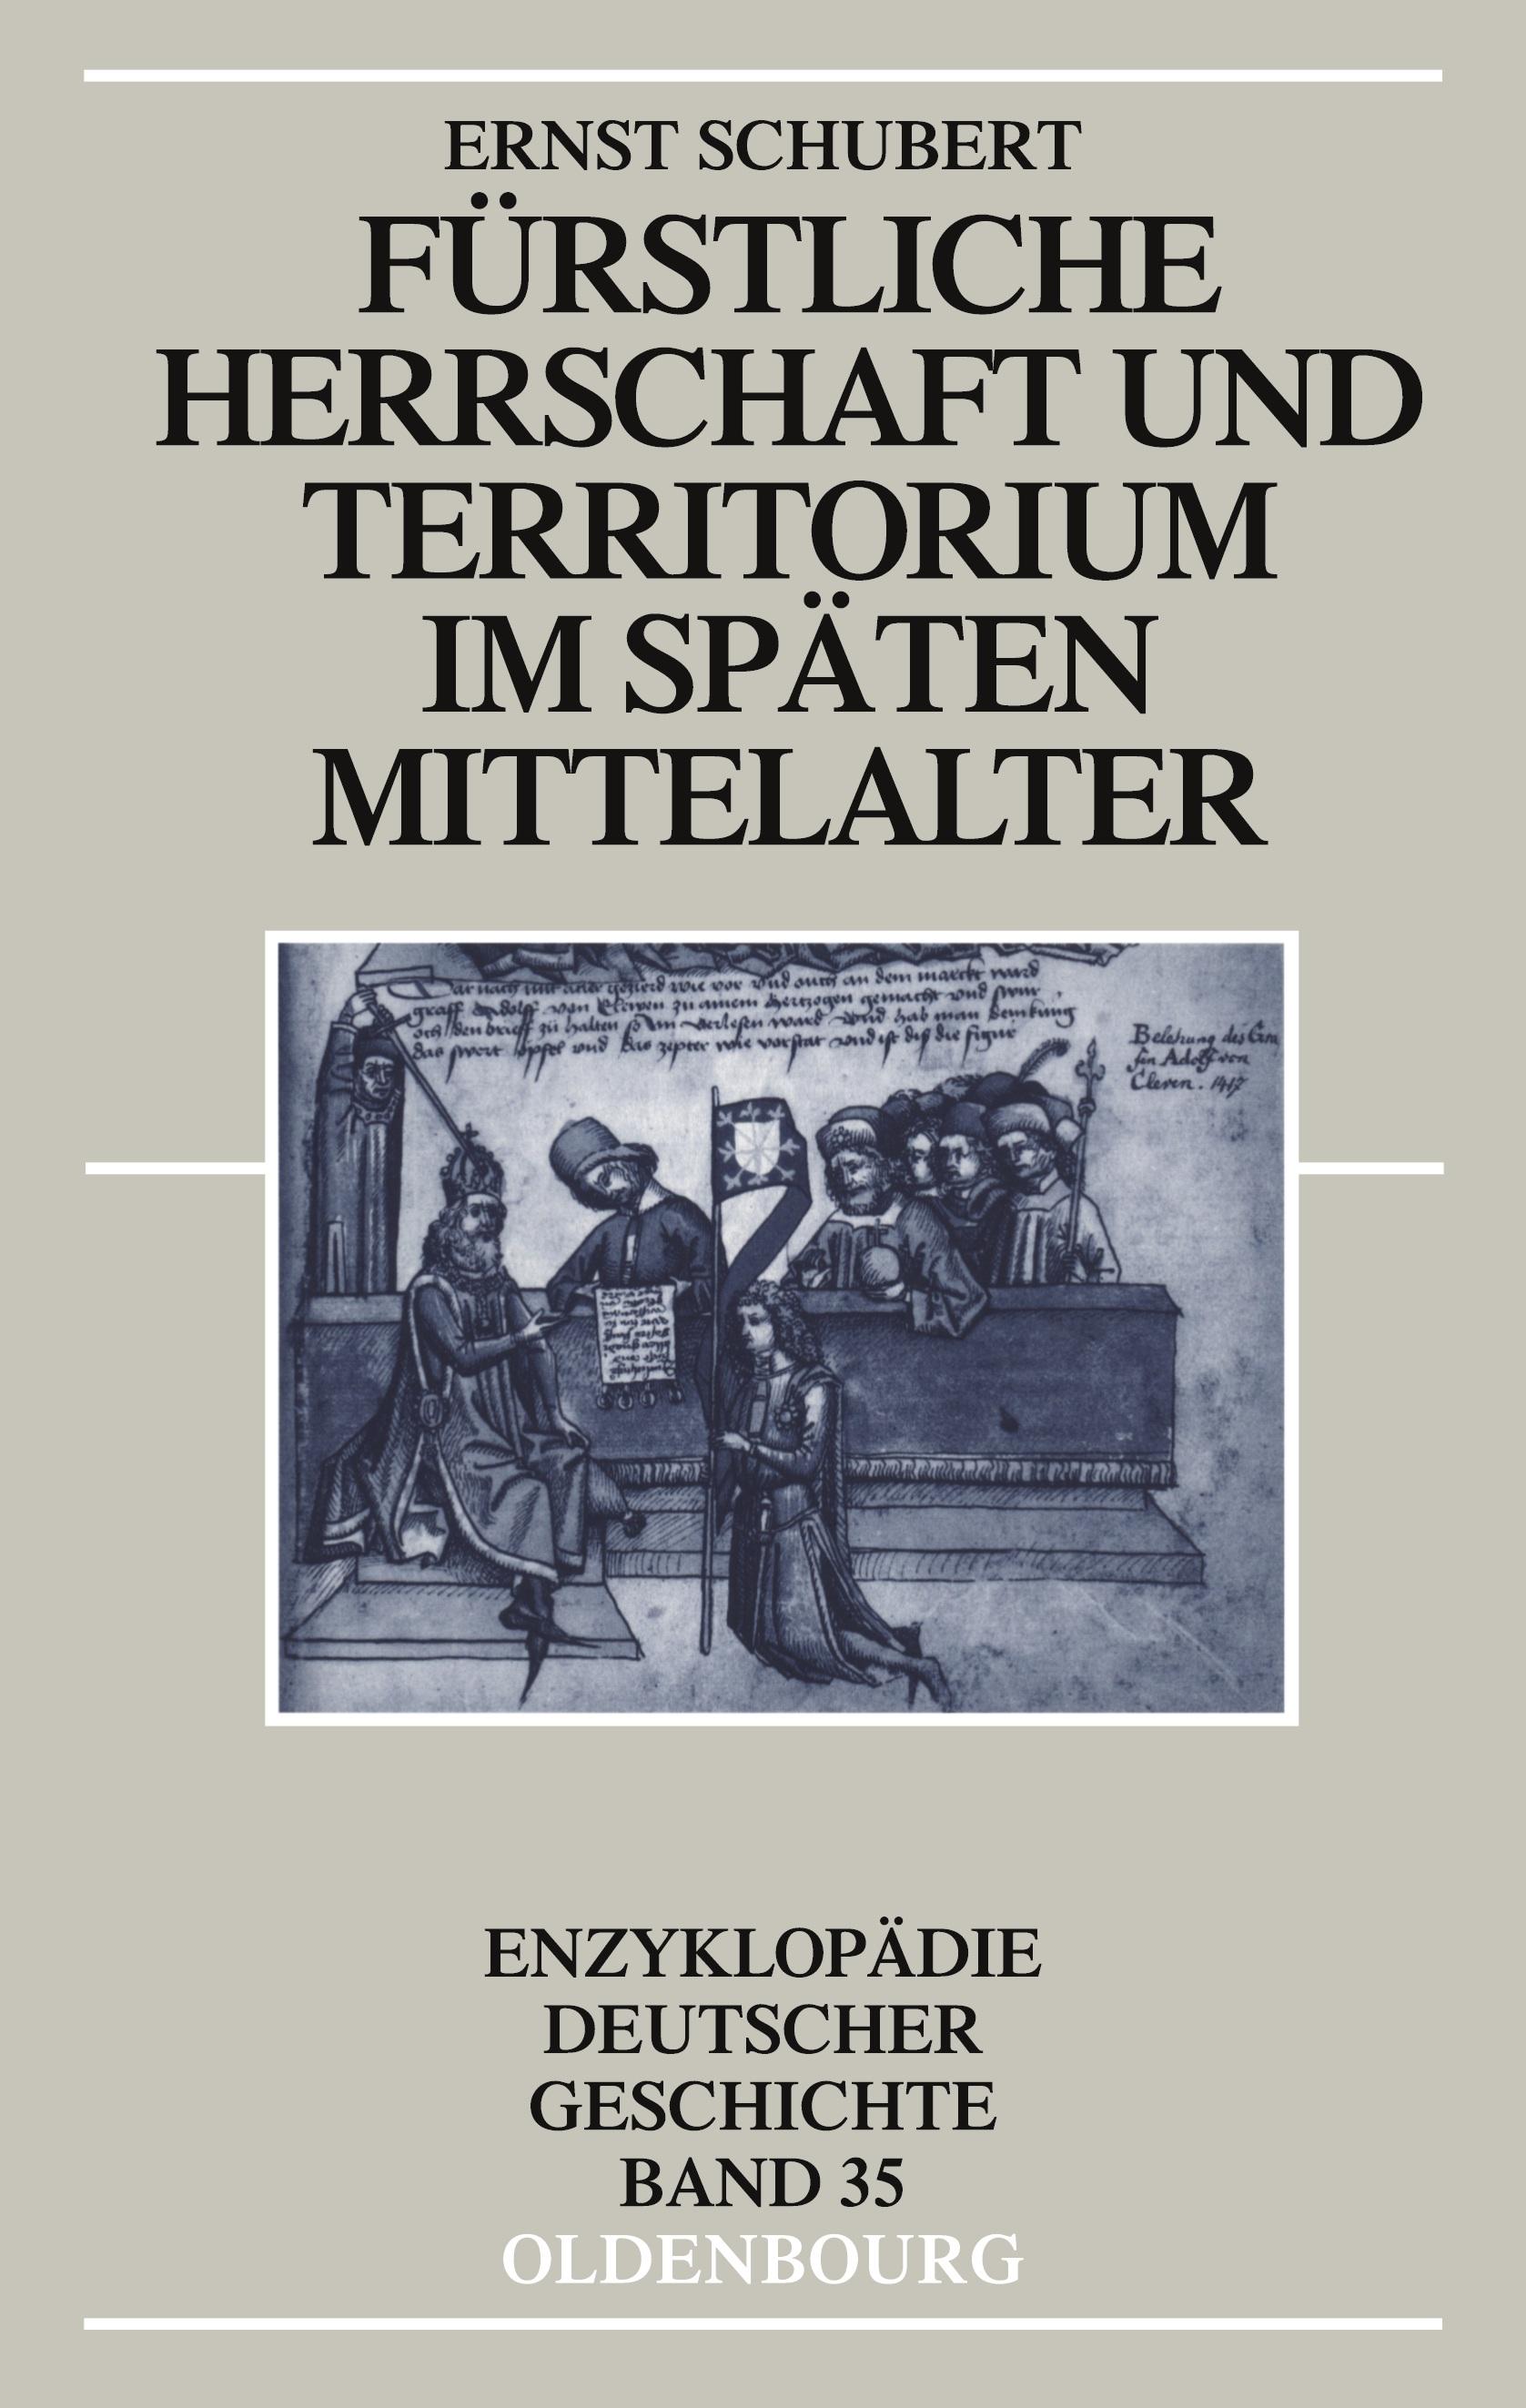 Fürstliche Herrschaft und Territorium im spaeten Mittelalter - Schubert, Ernst